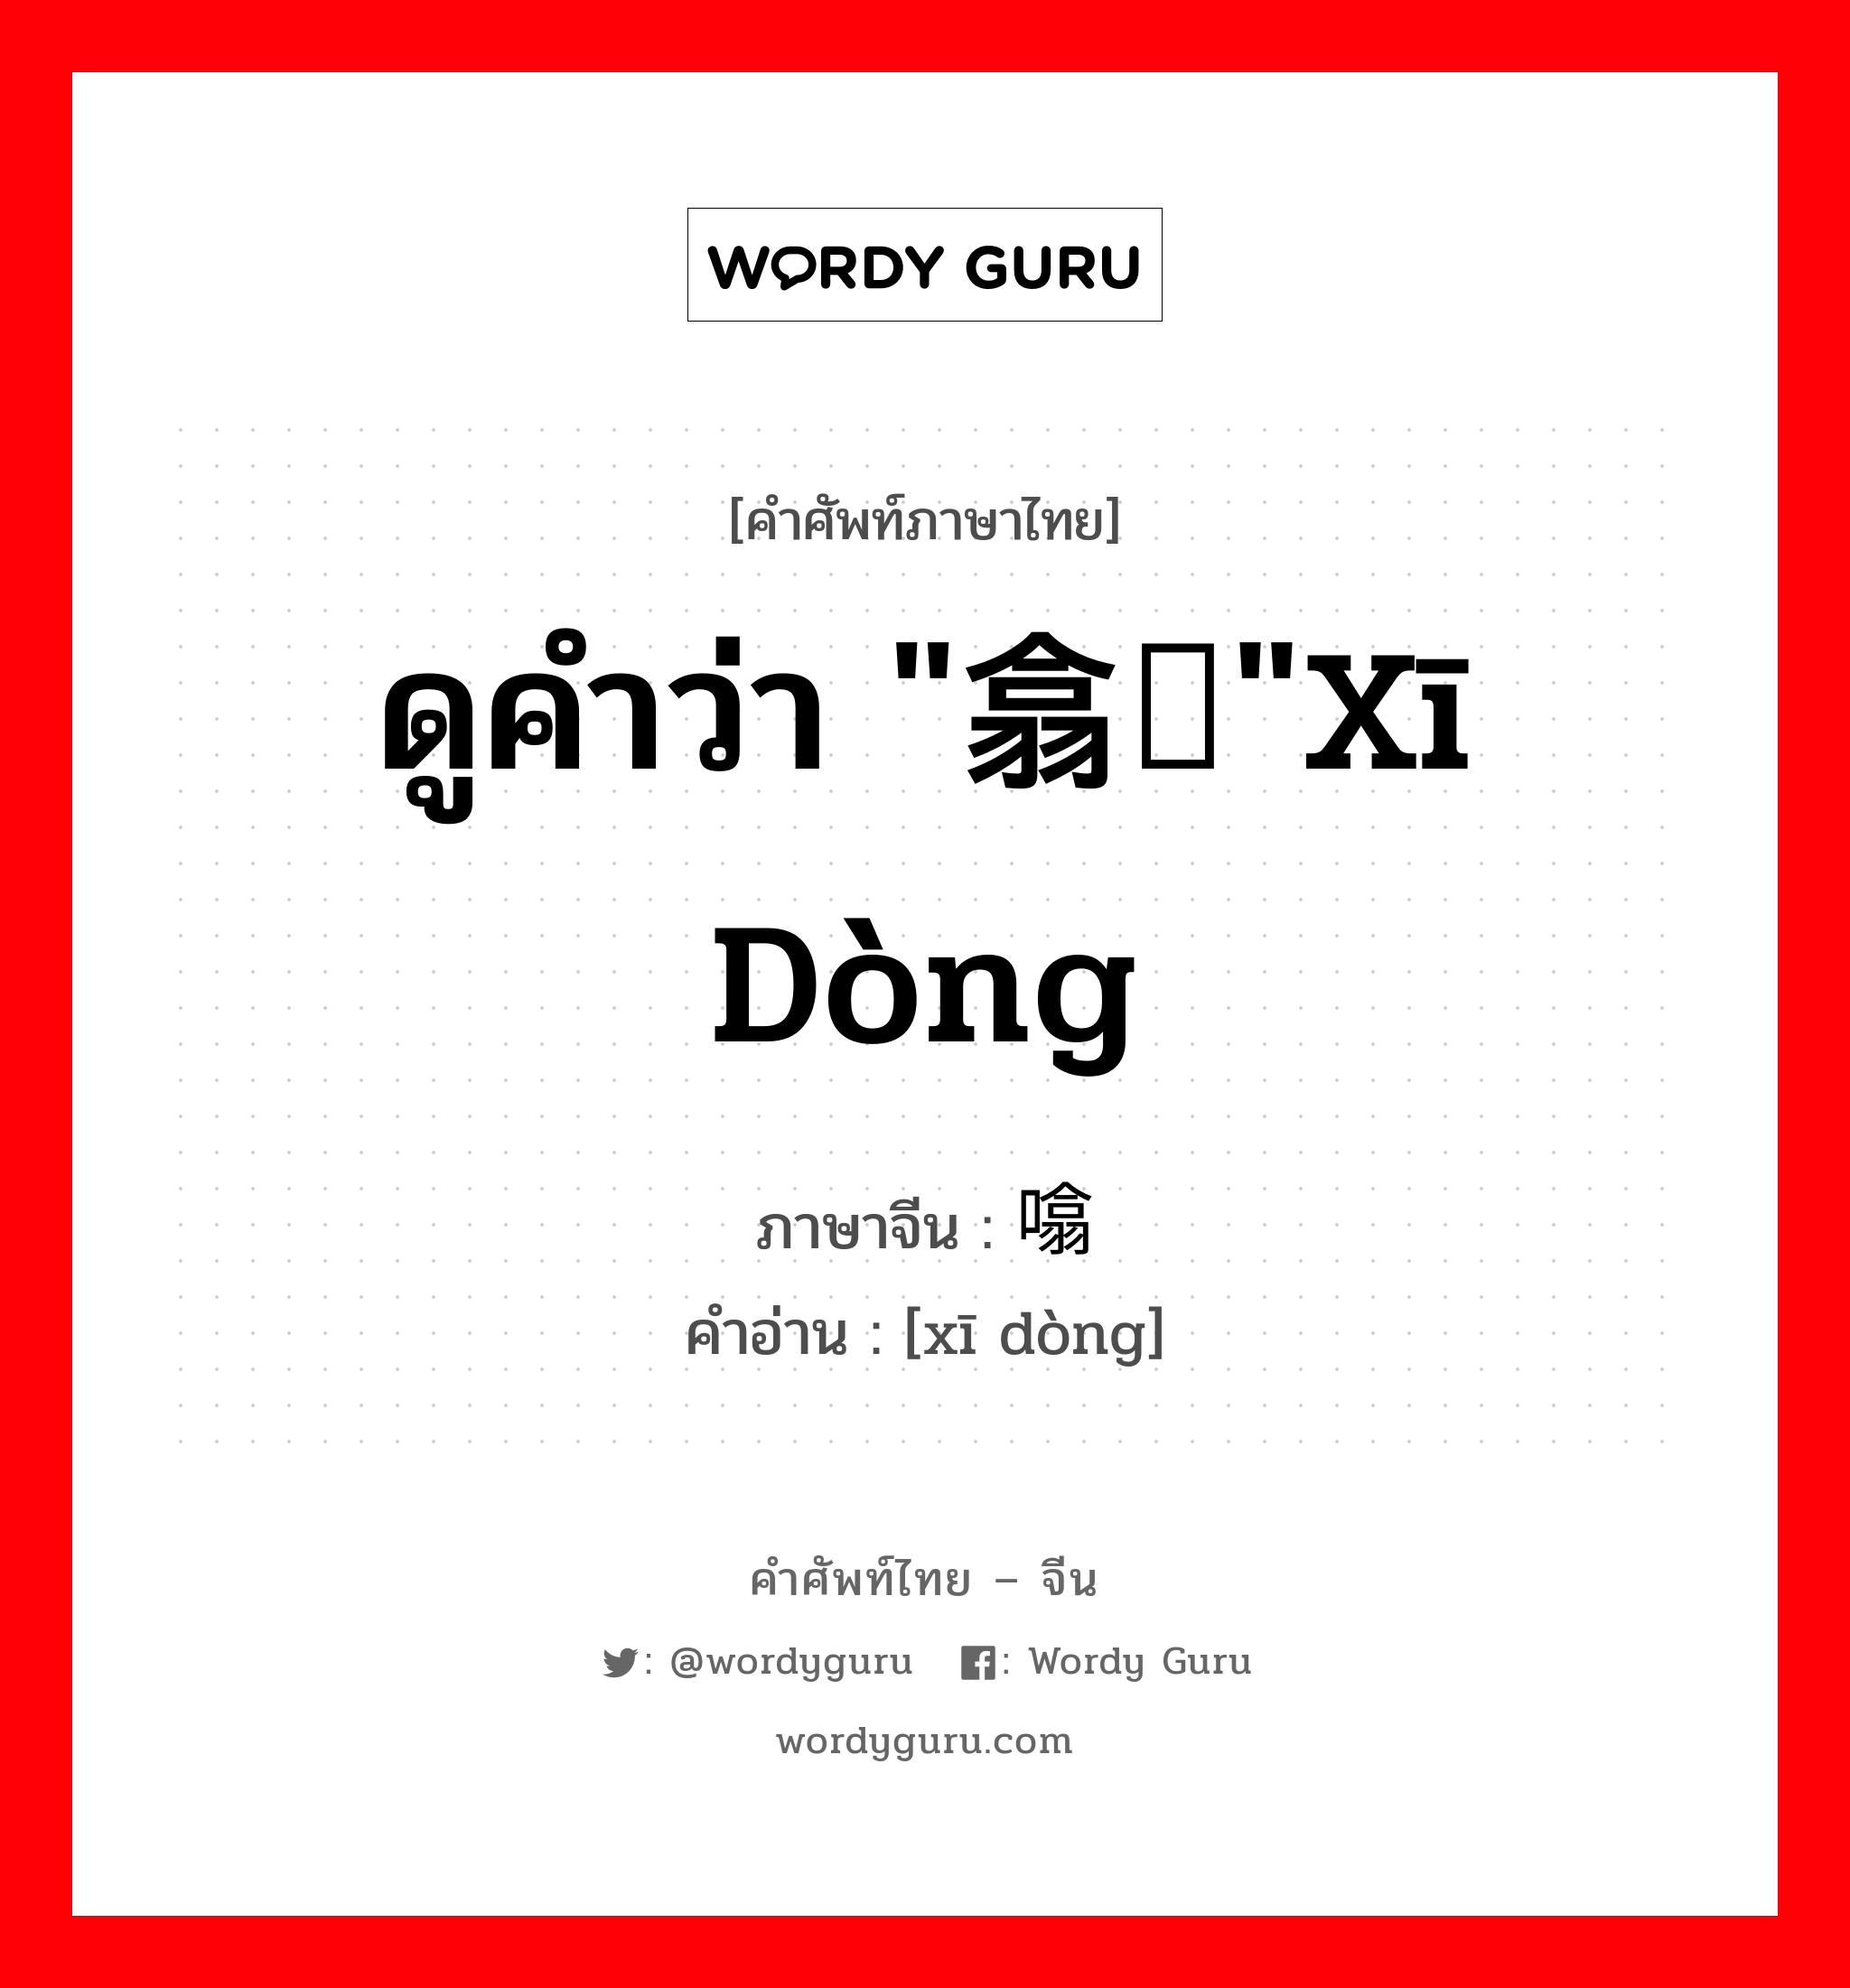 ดูคำว่า "翕动"xī dòng ภาษาจีนคืออะไร, คำศัพท์ภาษาไทย - จีน ดูคำว่า "翕动"xī dòng ภาษาจีน 噏动 คำอ่าน [xī dòng]